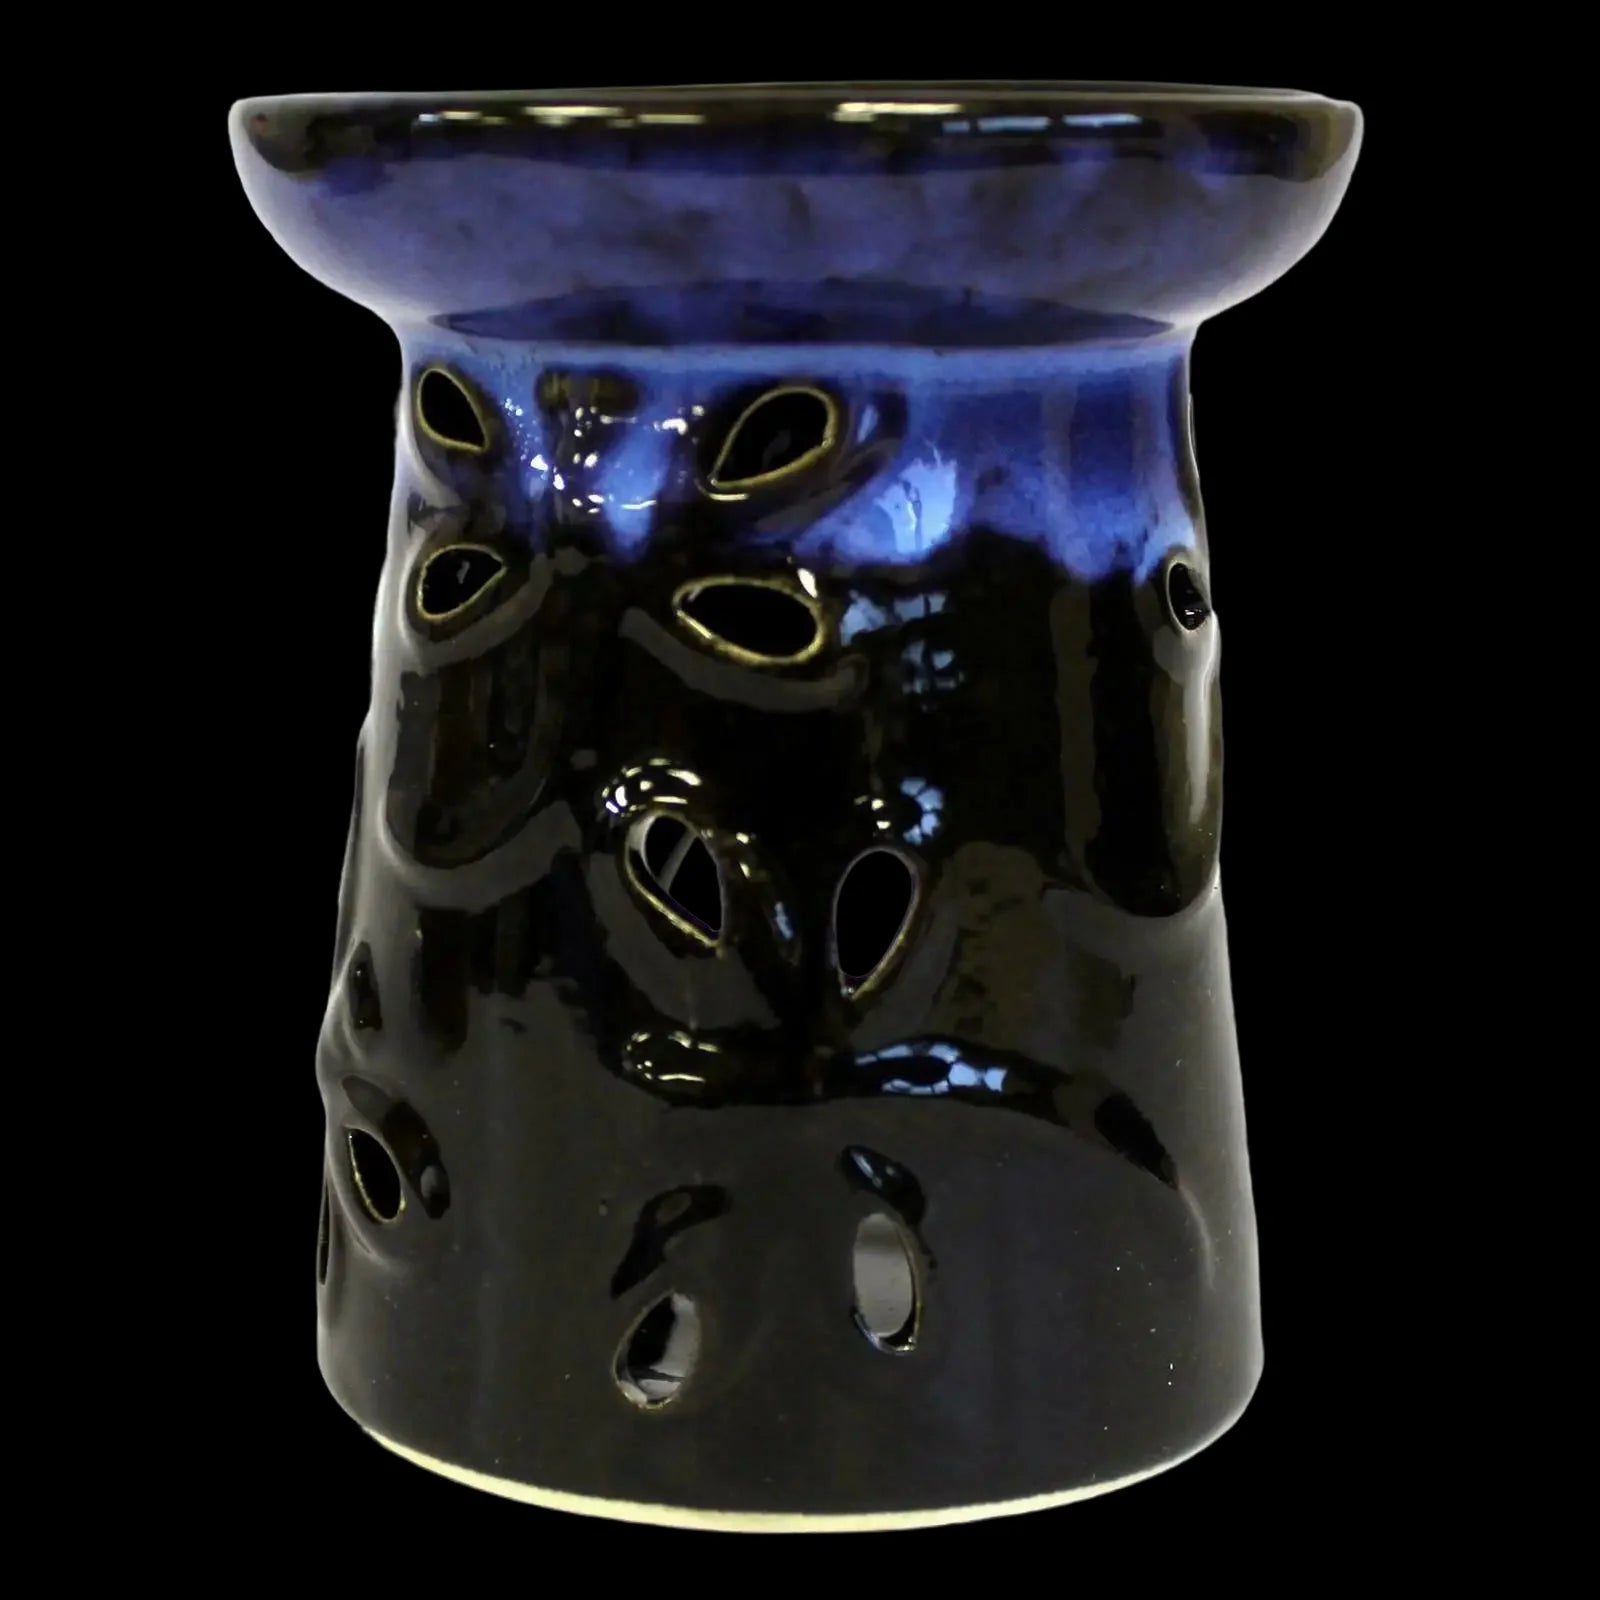 Classic Dragonfly Ceramic Oil Burners In a Rustic